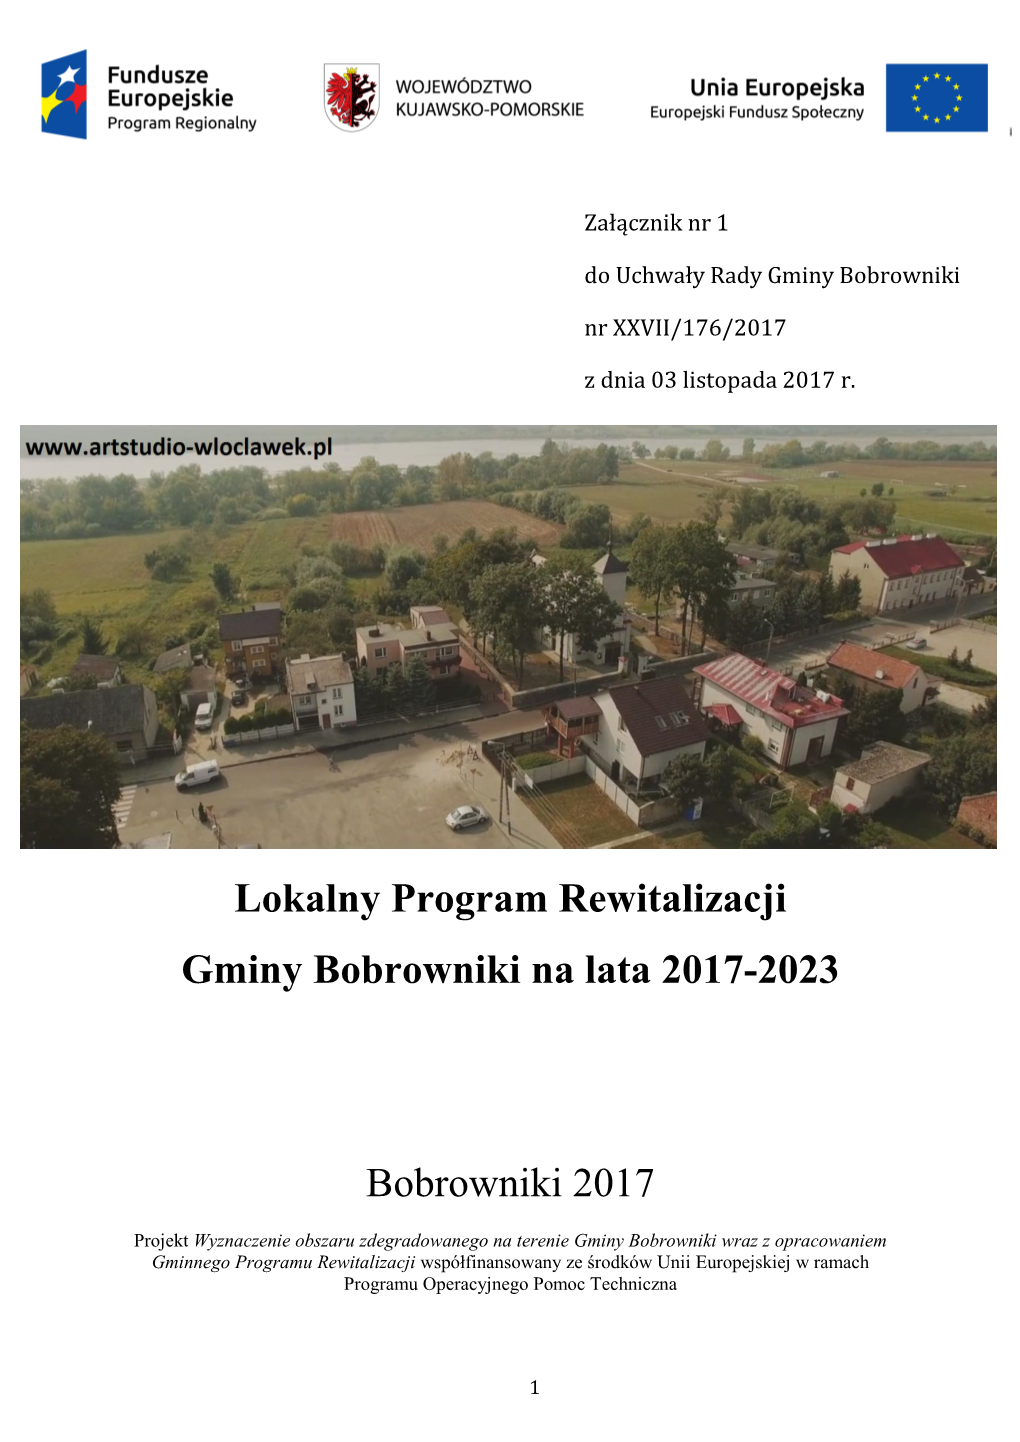 Lokalny Program Rewitalizacji Gminy Bobrowniki Na Lata 2017-2023 Projekt Bobrowniki 2017